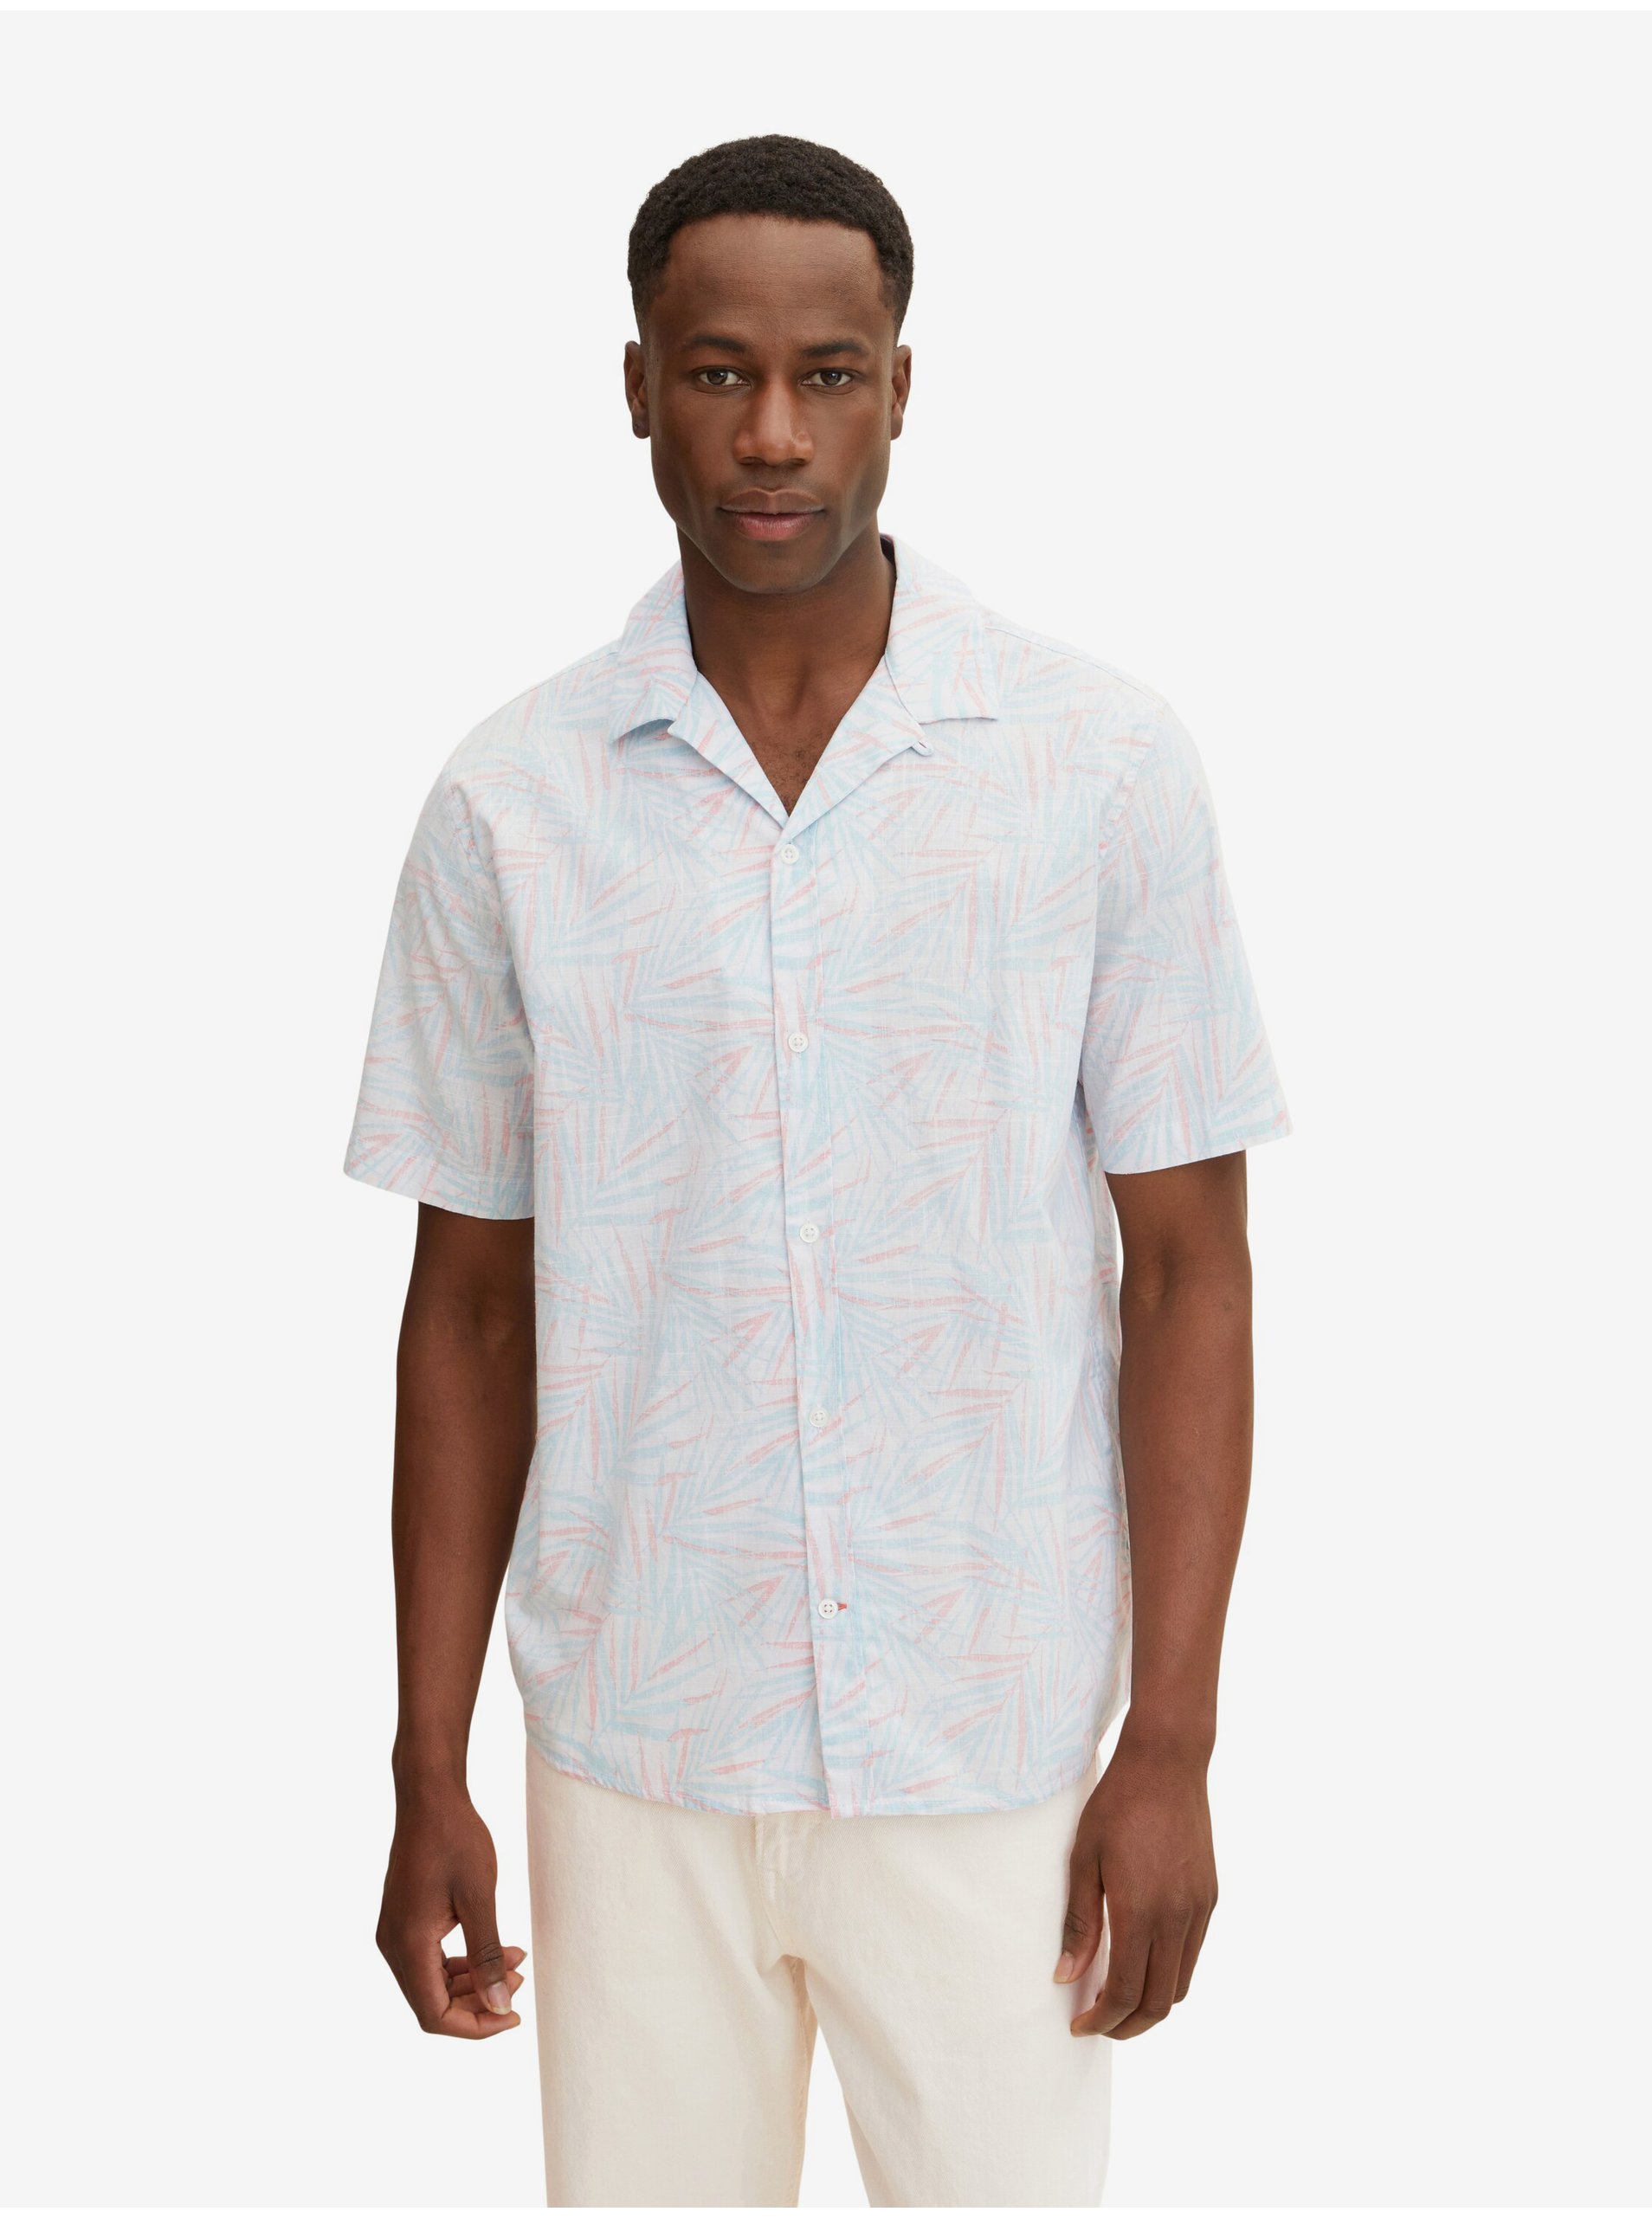 Lacno Modro-biela pánska vzorovaná košeľa s krátkym rukávom Tom Tailor